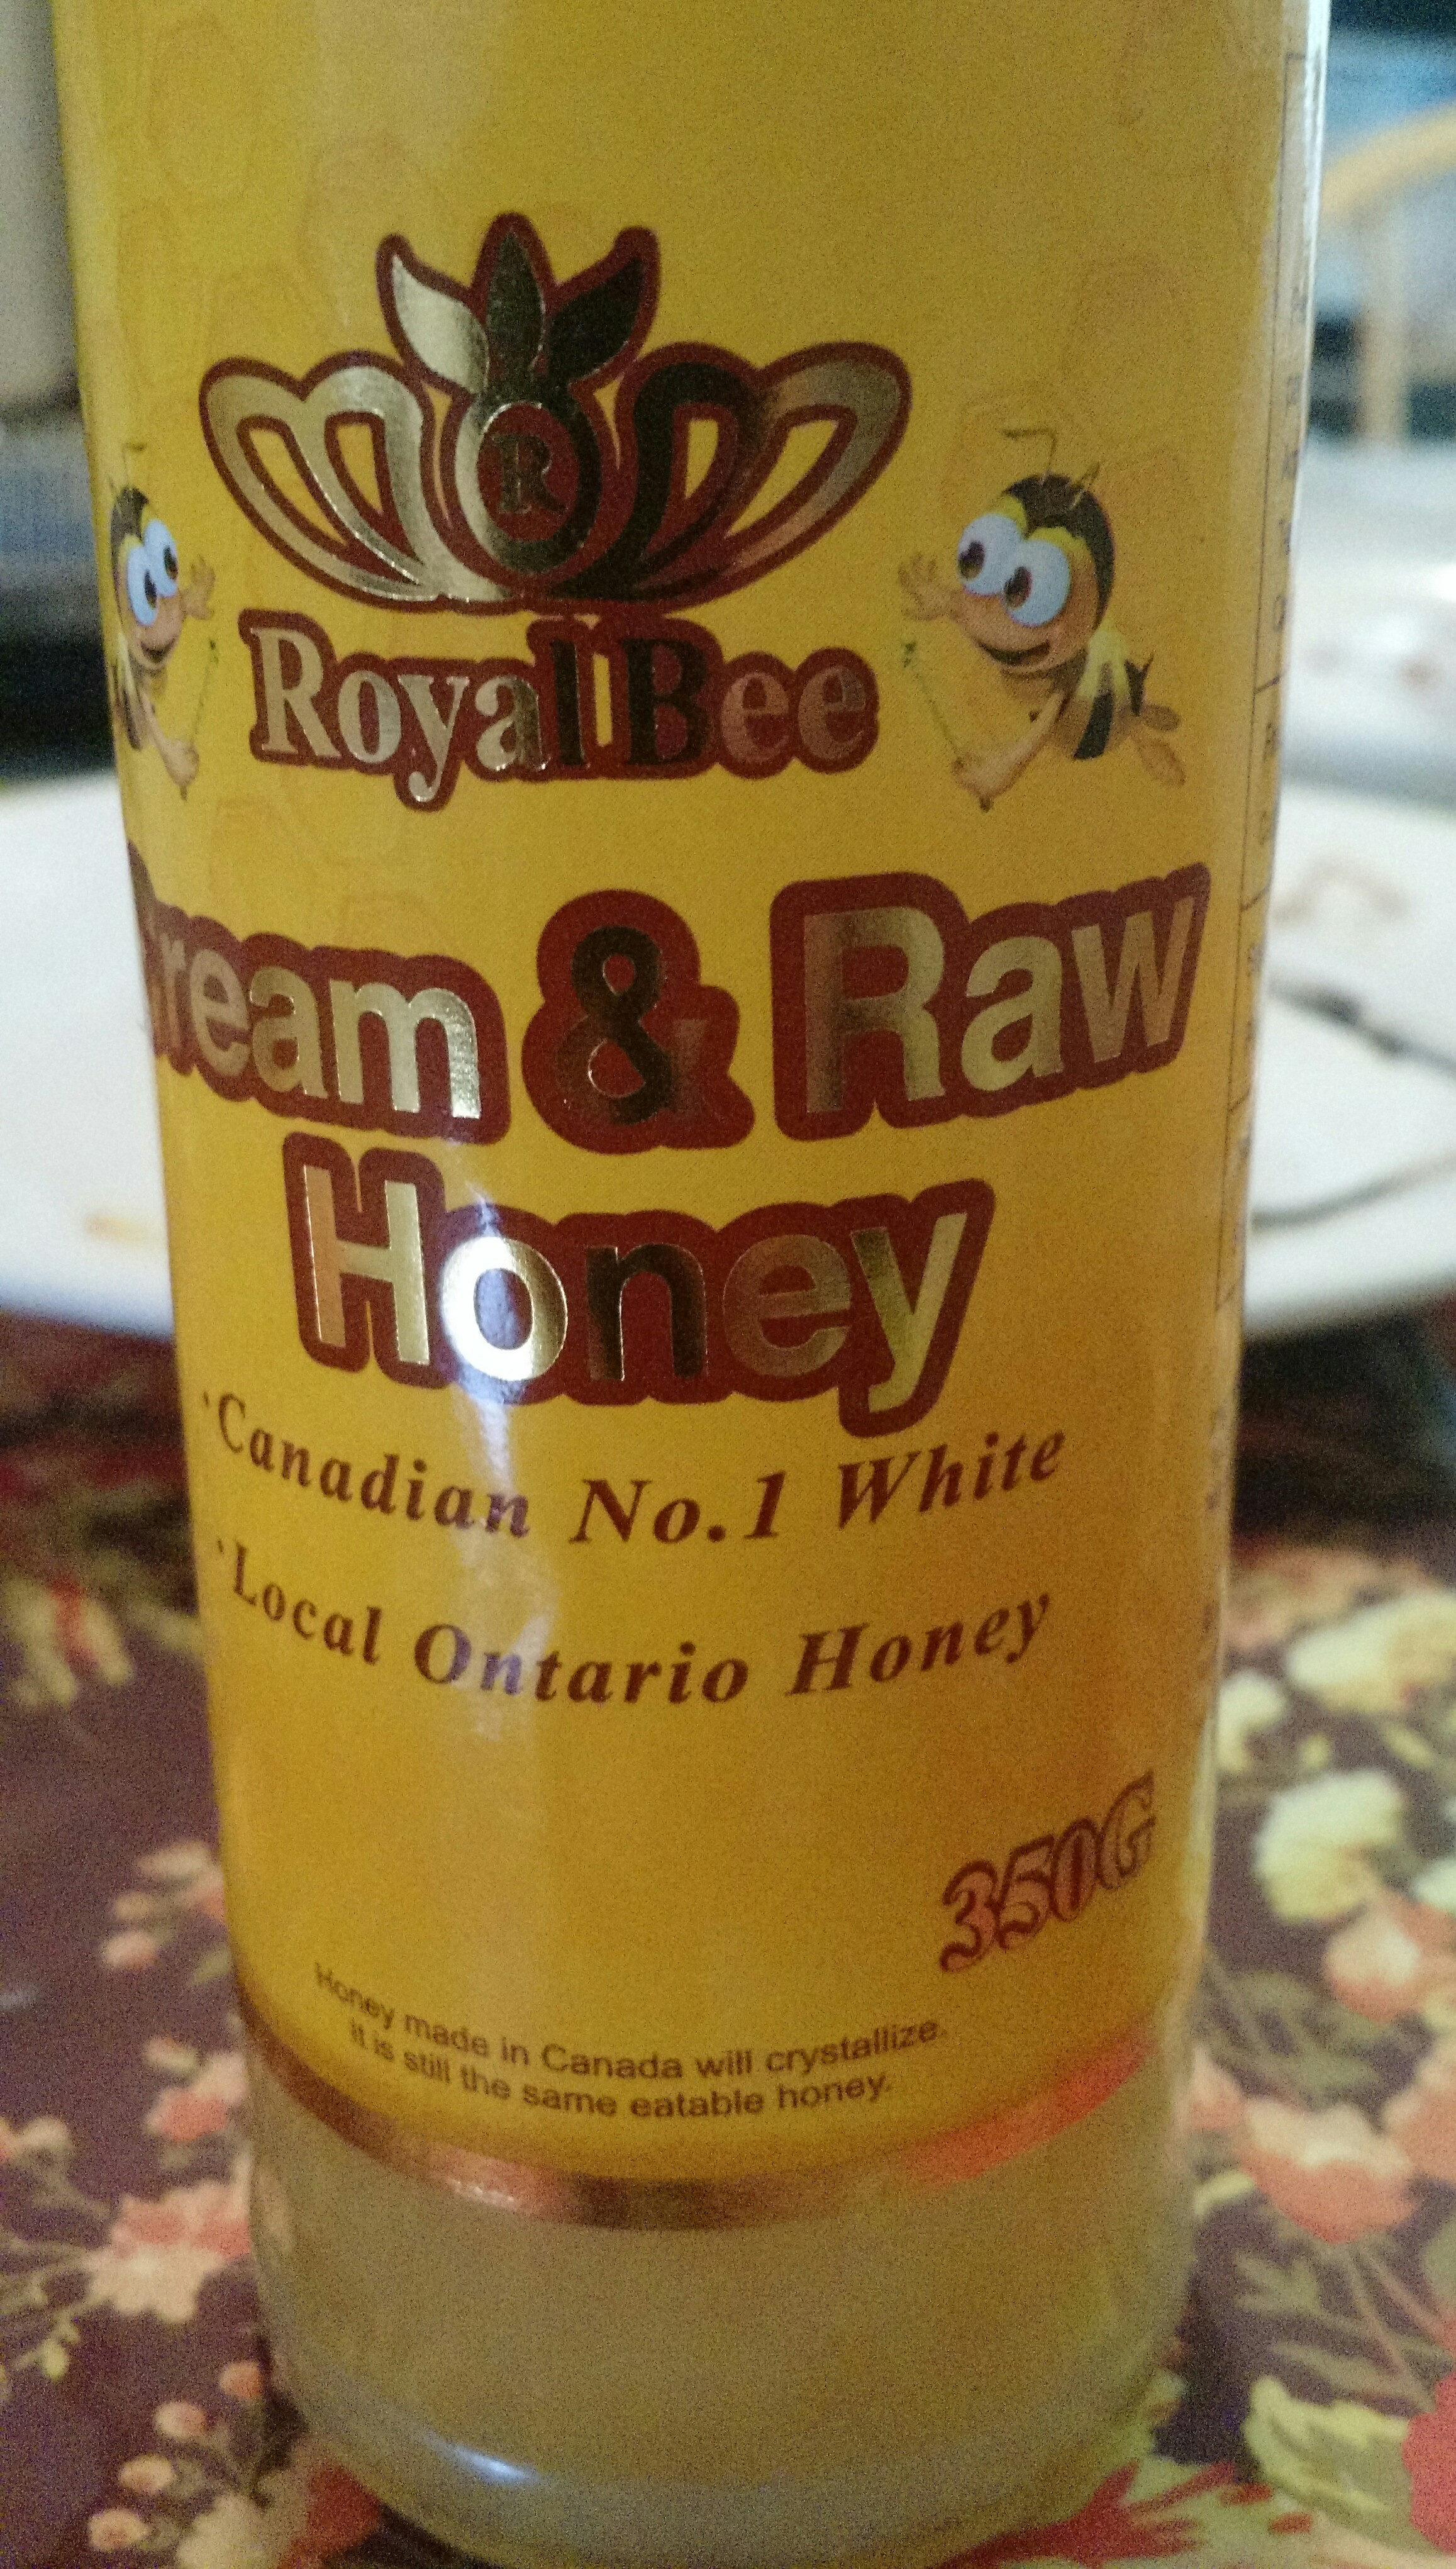 Cream & Raw Honey - Produit - en